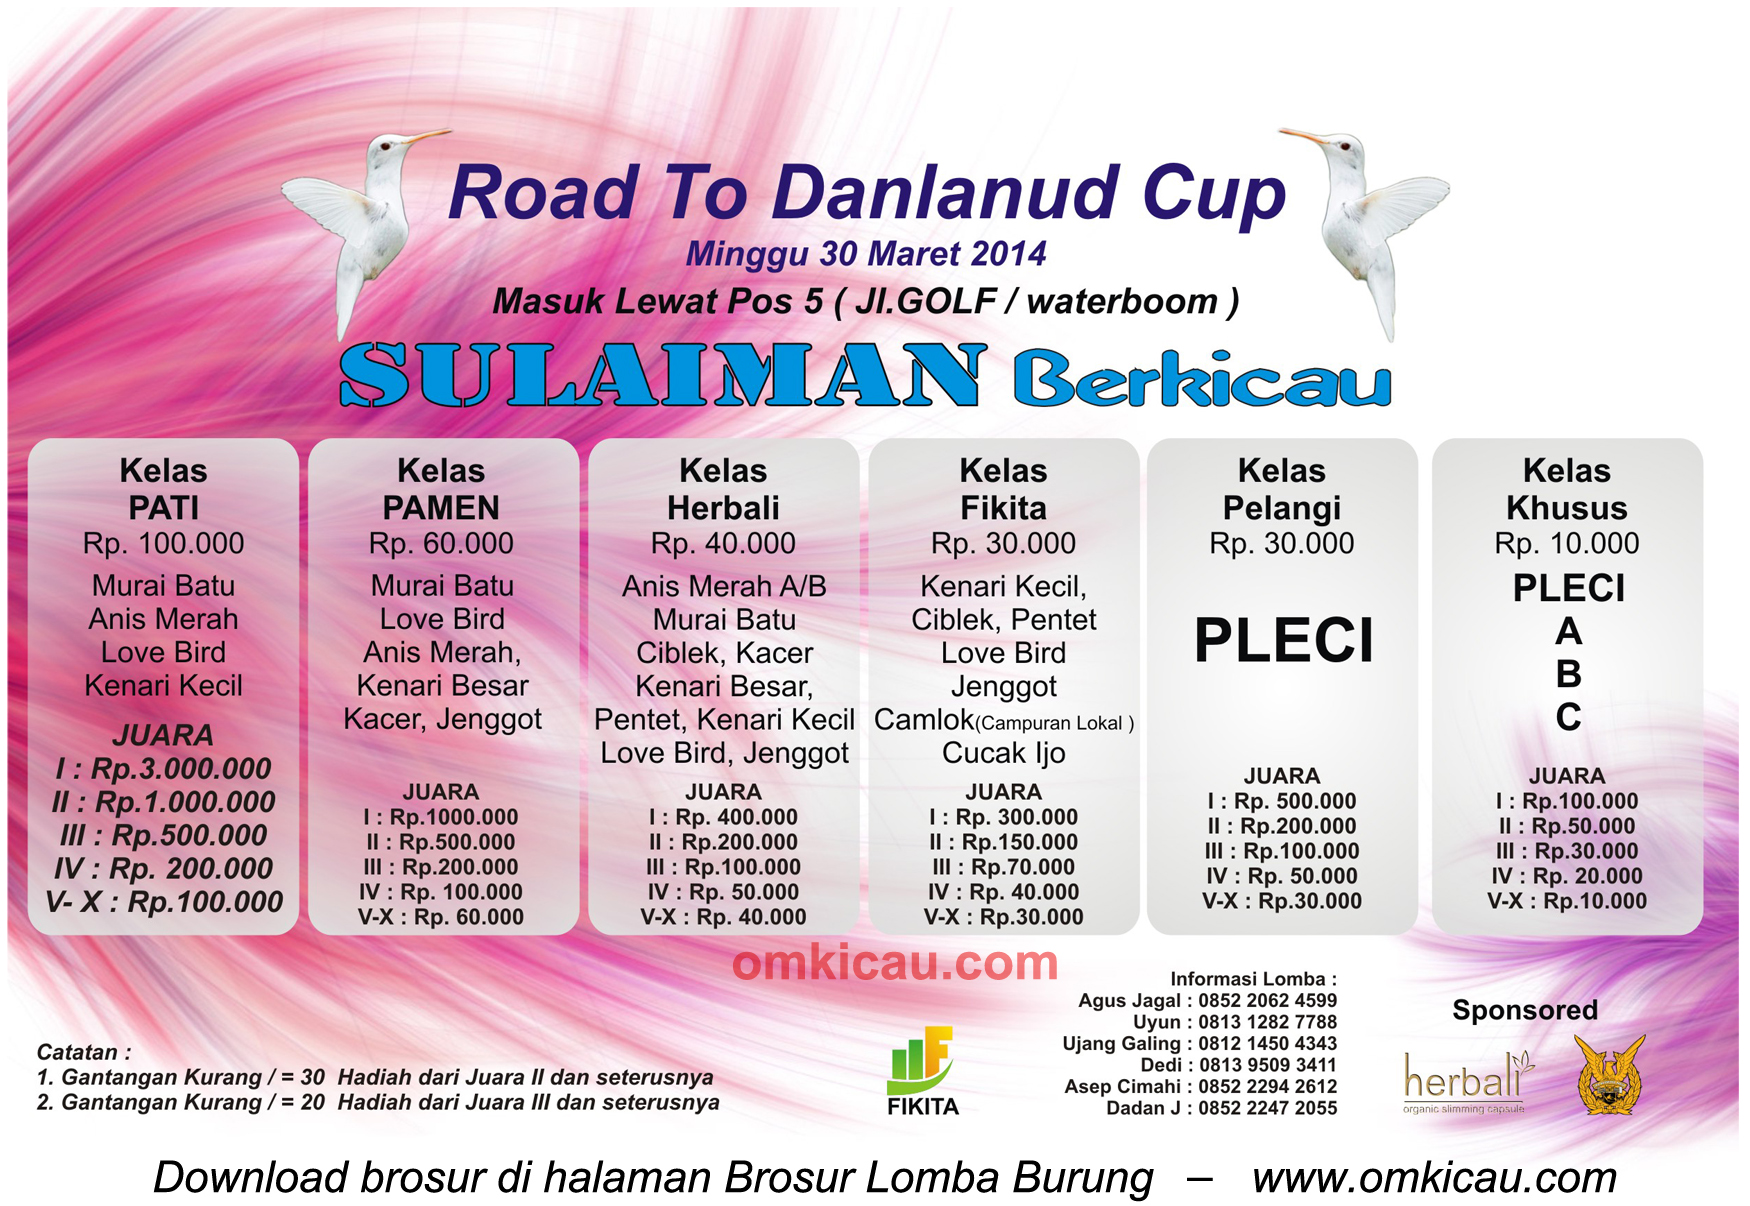 Brosur Lomba Burung Berkicau Road to Danlanud Cup - Sulaiman Berkicau, Bandung, 30 Maret 2014